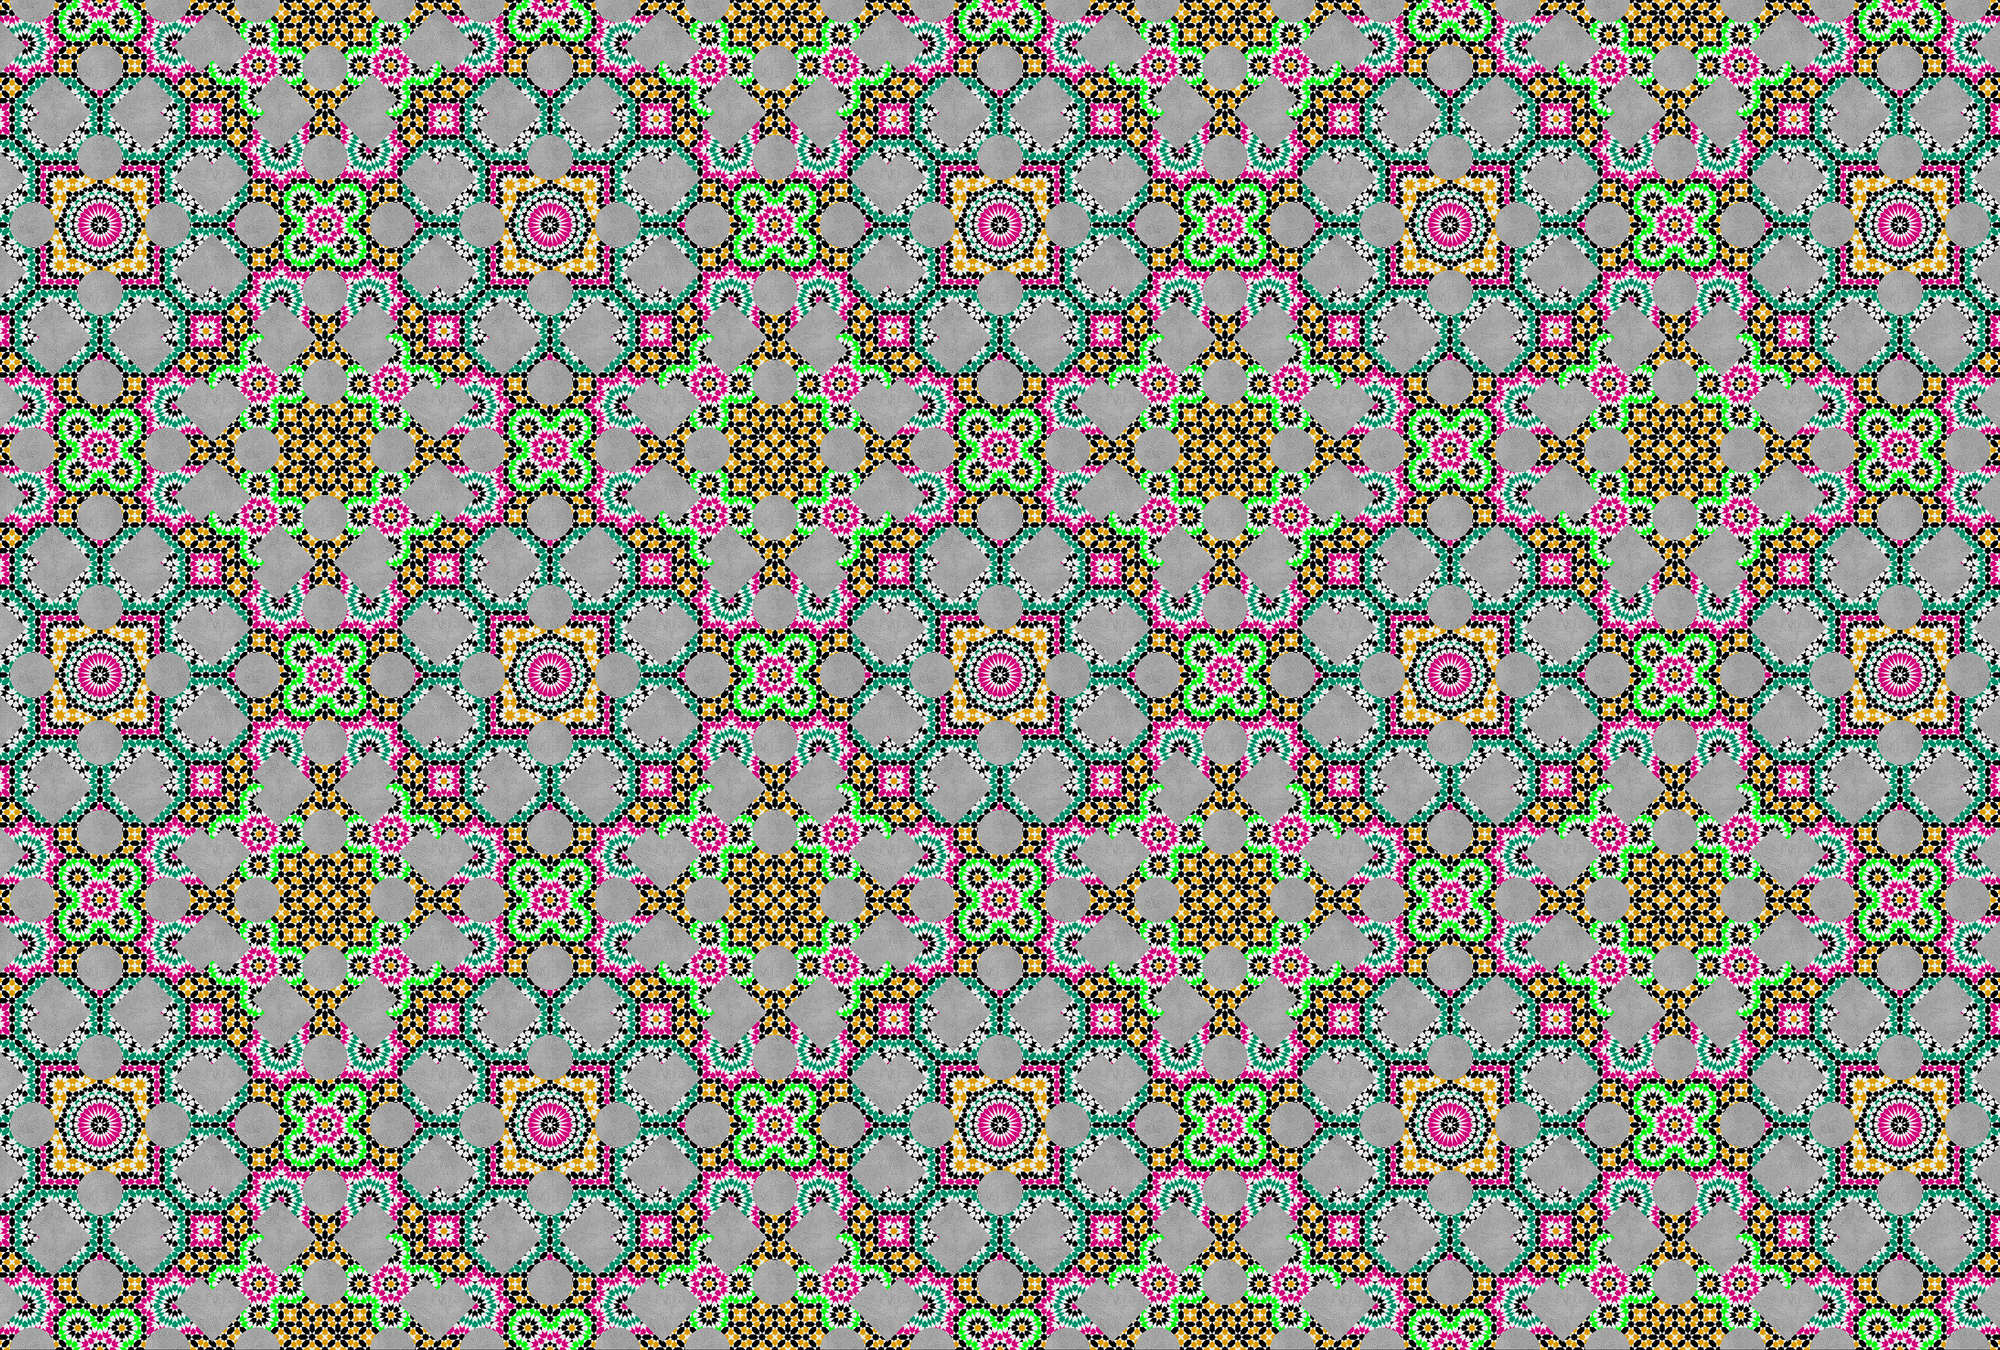             Bunte Fototapete mit Kaleidoskop Effekt – Grau, Rosa
        